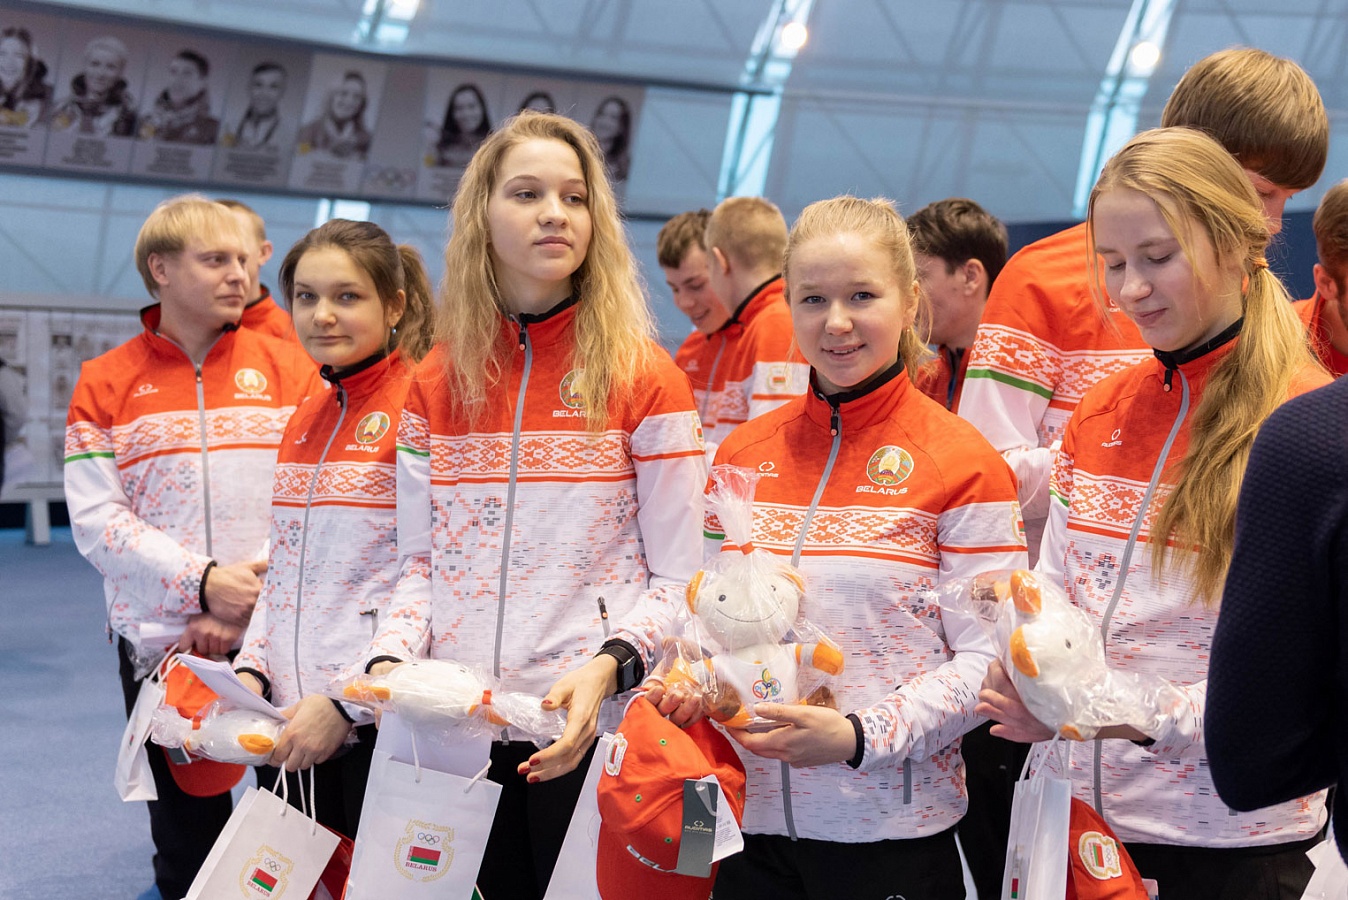 Каждый участник белорусской олимпийской делегации получил в подарок мягкую игрушку Агрика с логотипом будущих соревнований, а также другие сувениры от Национального олимпийского комитета и его партнеров.